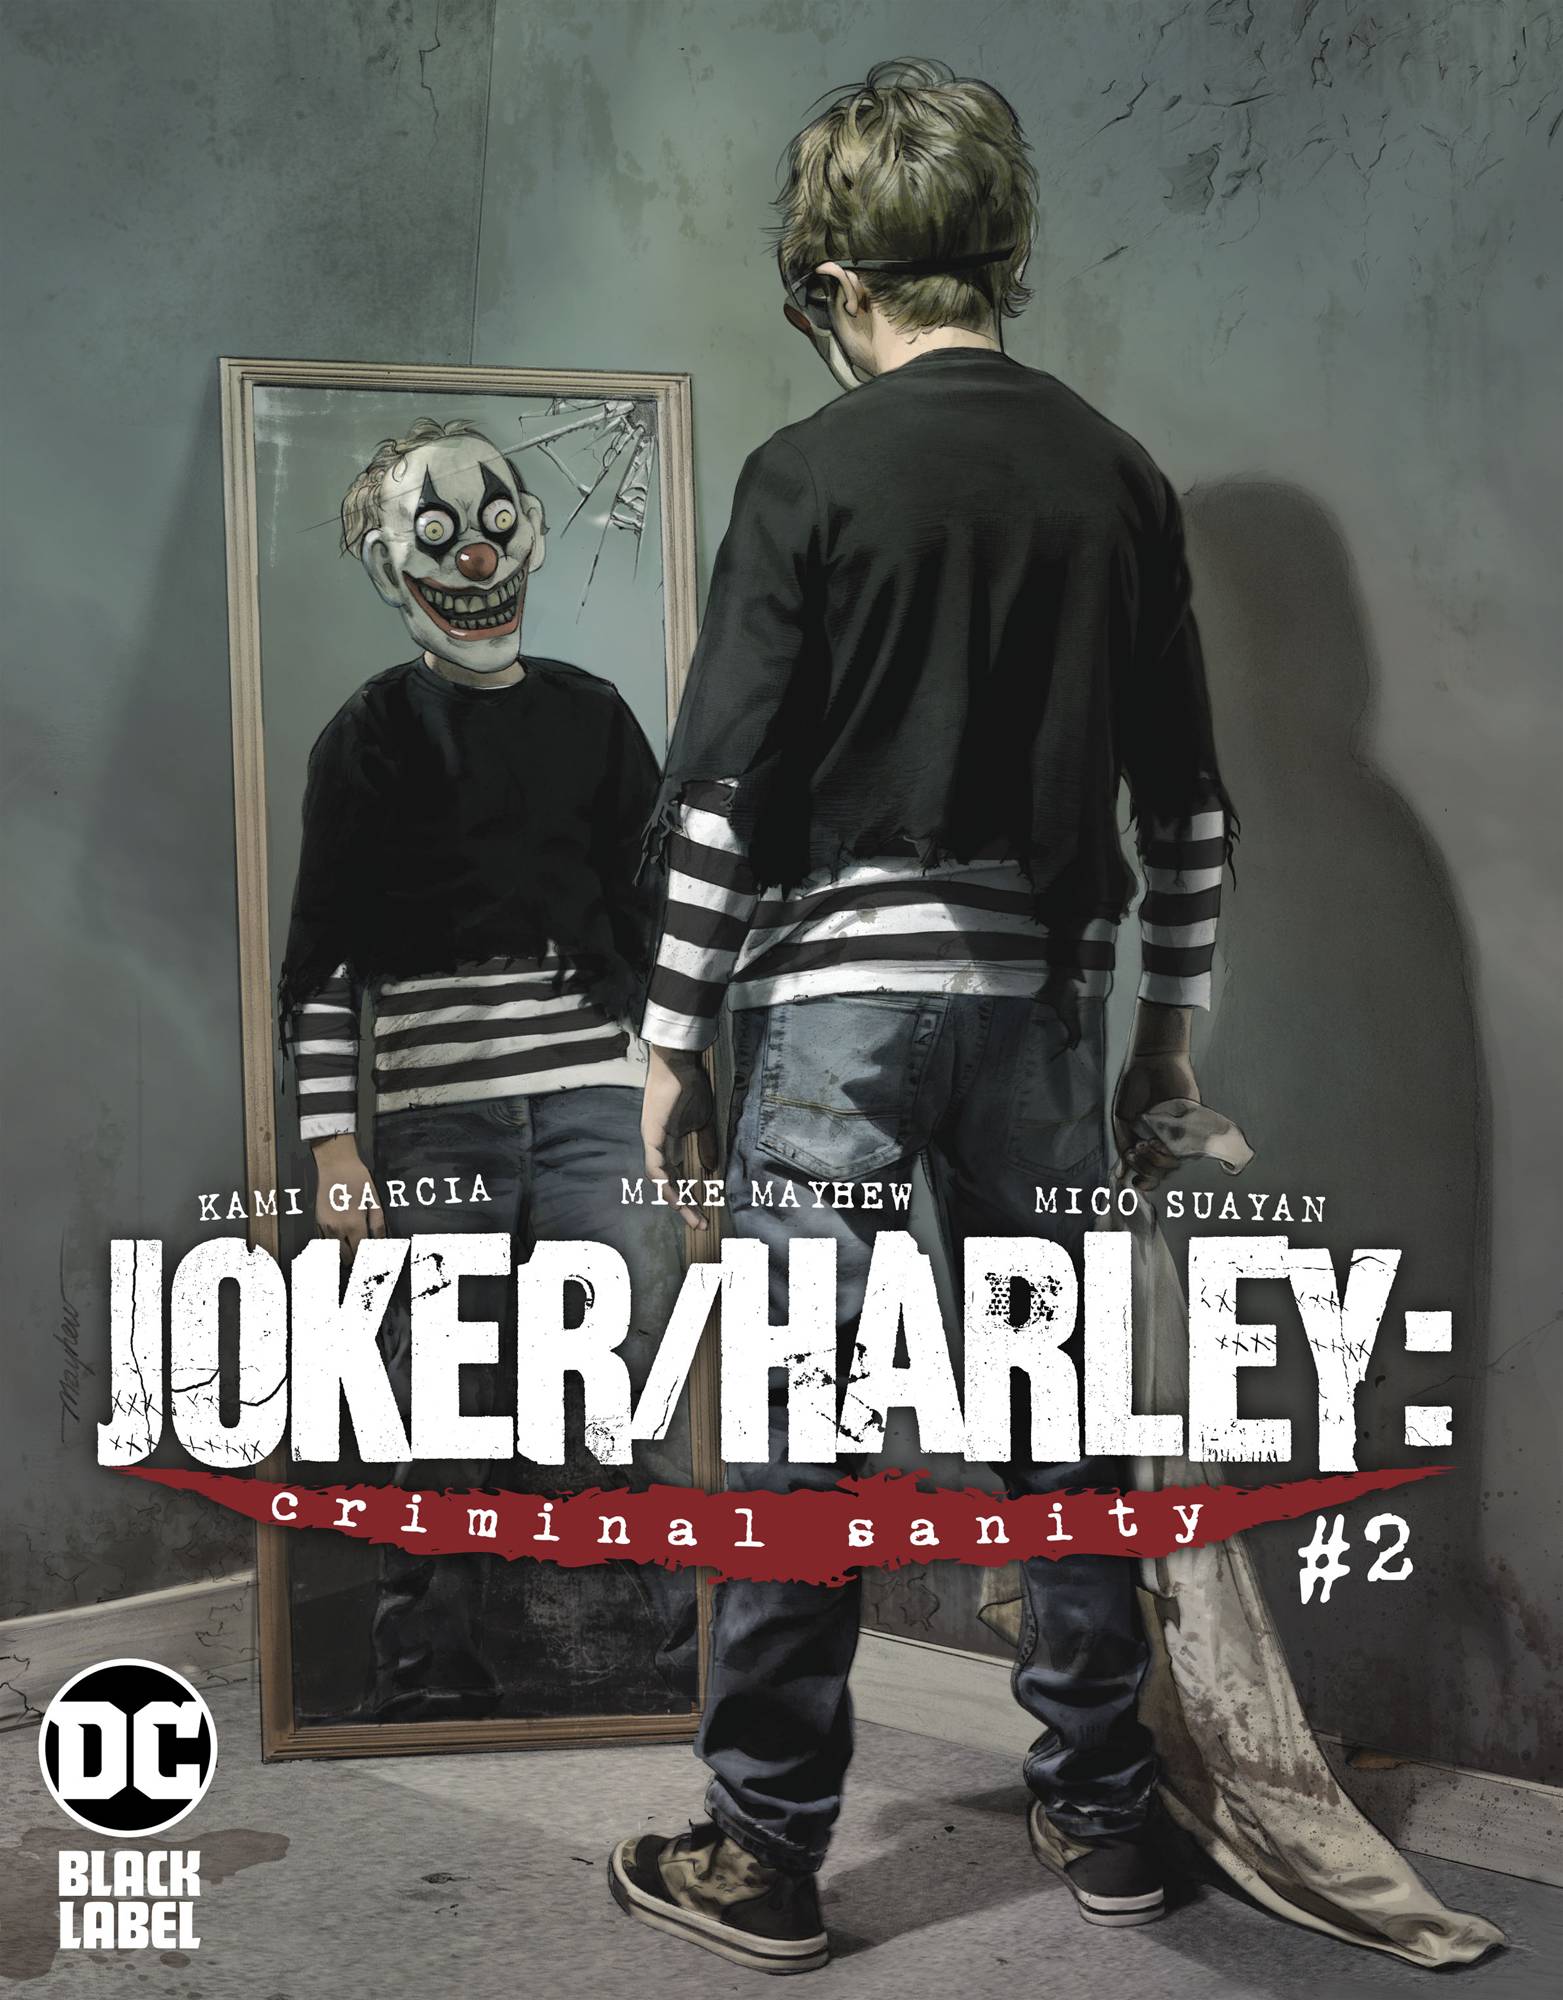 Joker/Harley: Criminal Sanity 2 - Heroes Cave